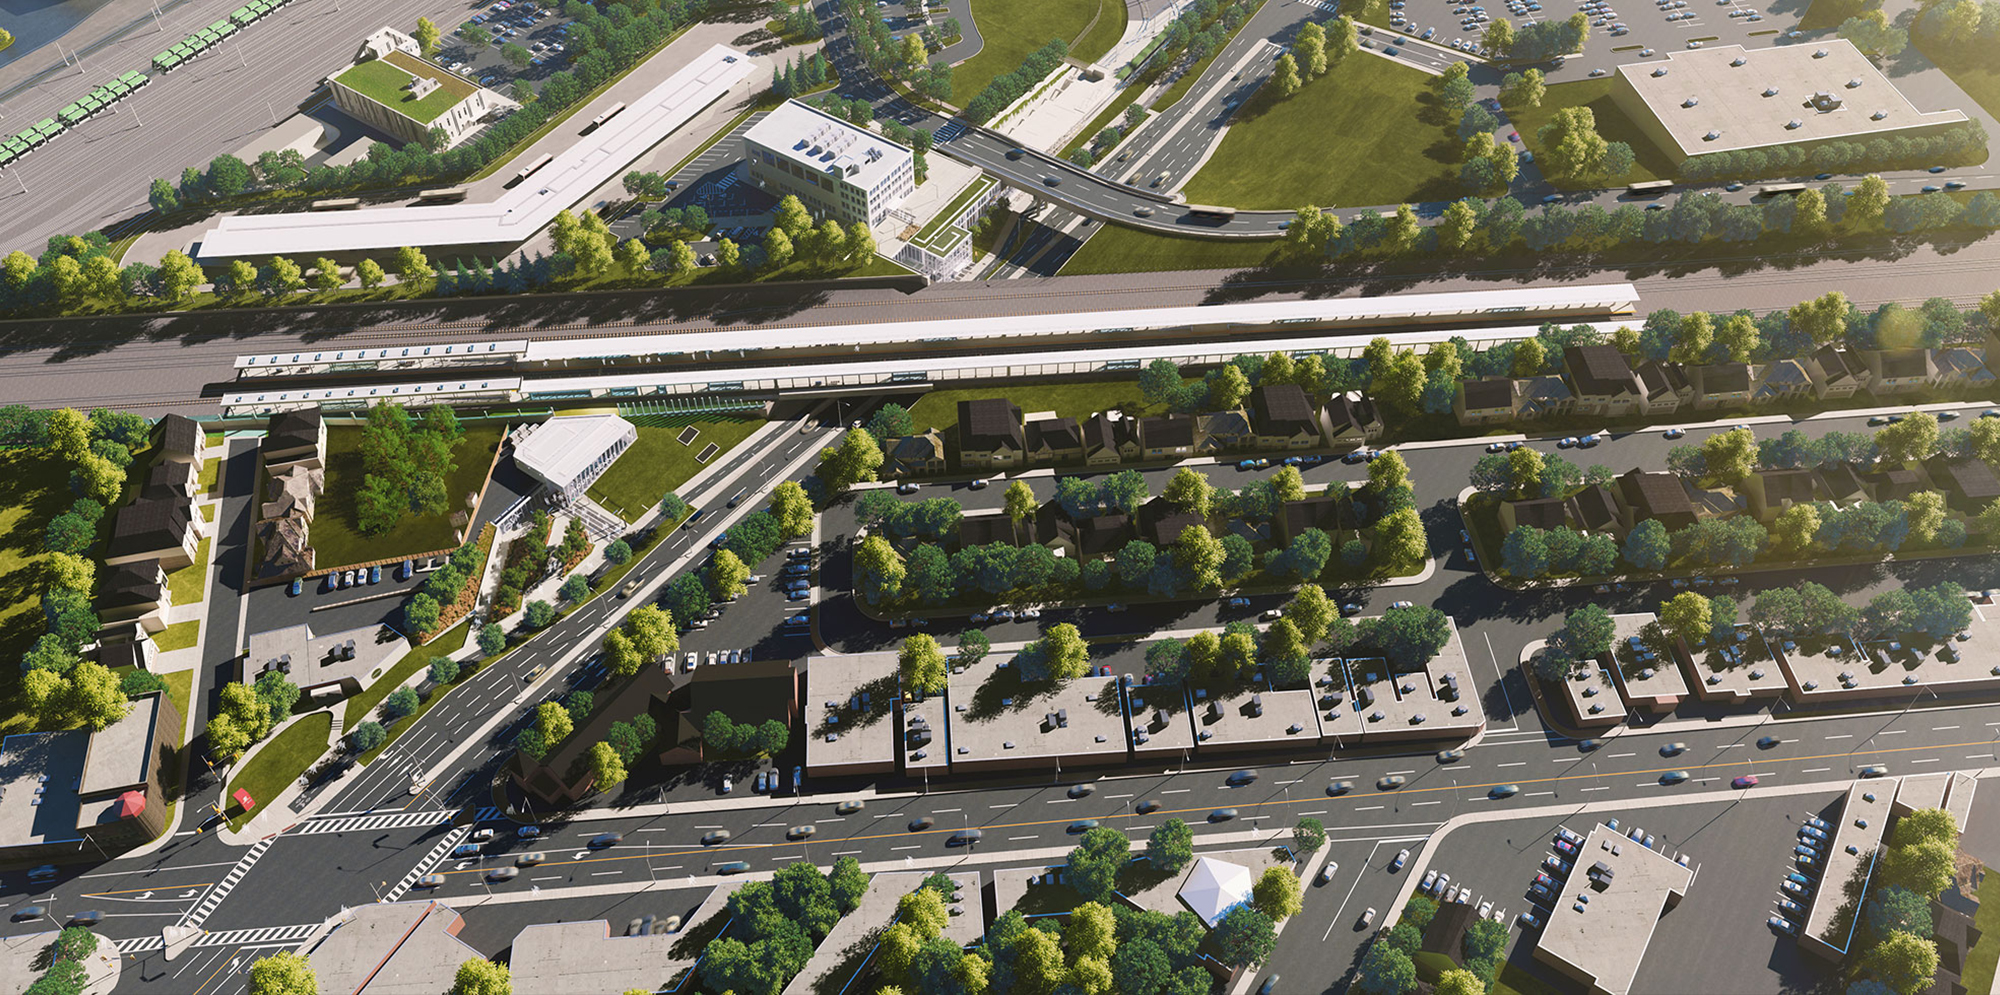 Aerial rendering of Eglinton Crosstown LRT going through a neighbourhood